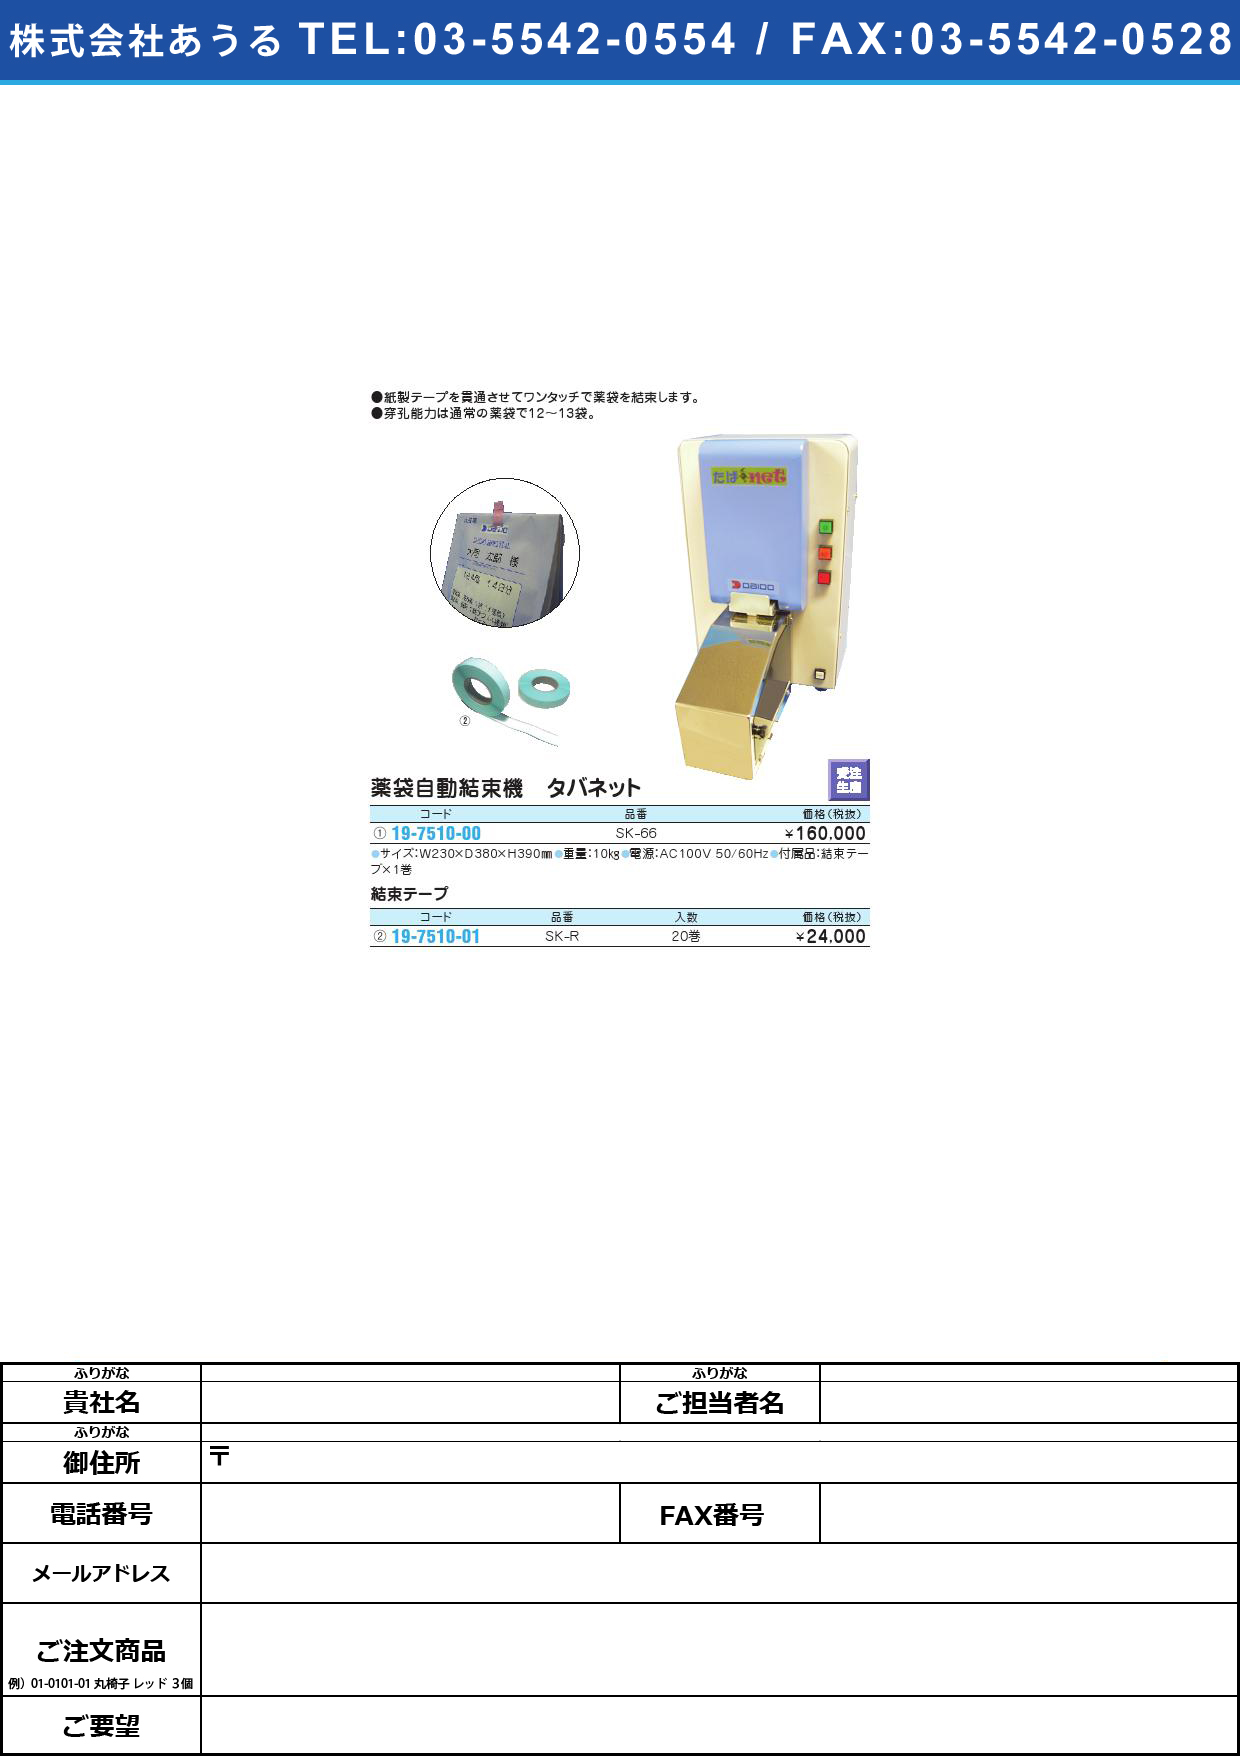 薬袋自動結束機 タバネット SK-66ﾀﾊﾞﾈｯﾄ(19-7510-00)【1台単位】